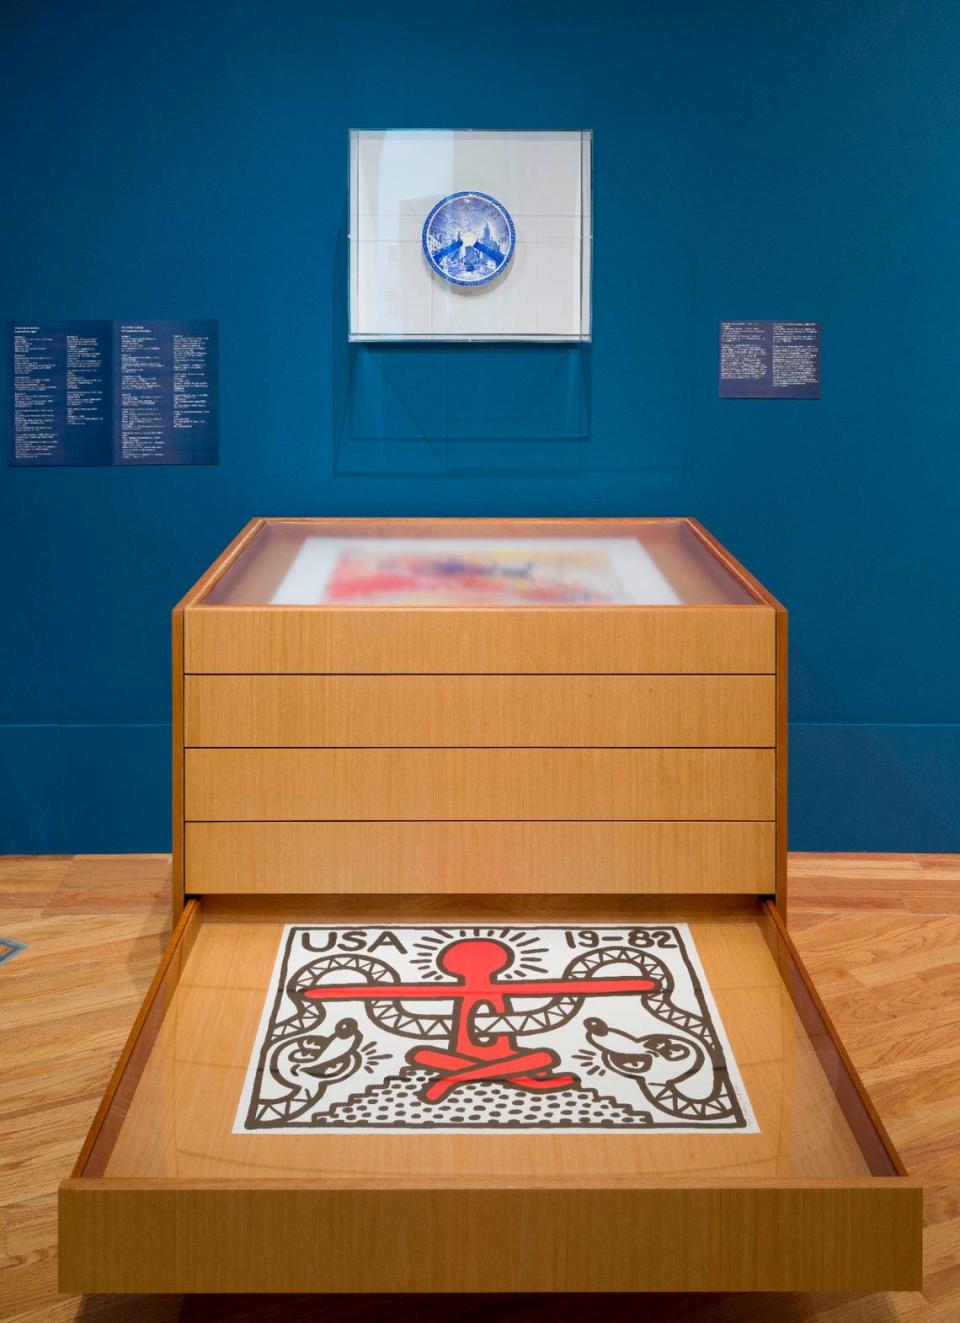 “Together/Apart”, exposición en The Patricia & Phillip Frost Art Museum, cuya curaduría propone una “narrativa revisada del arte moderno y contemporáneo de Estados Unidos”. 